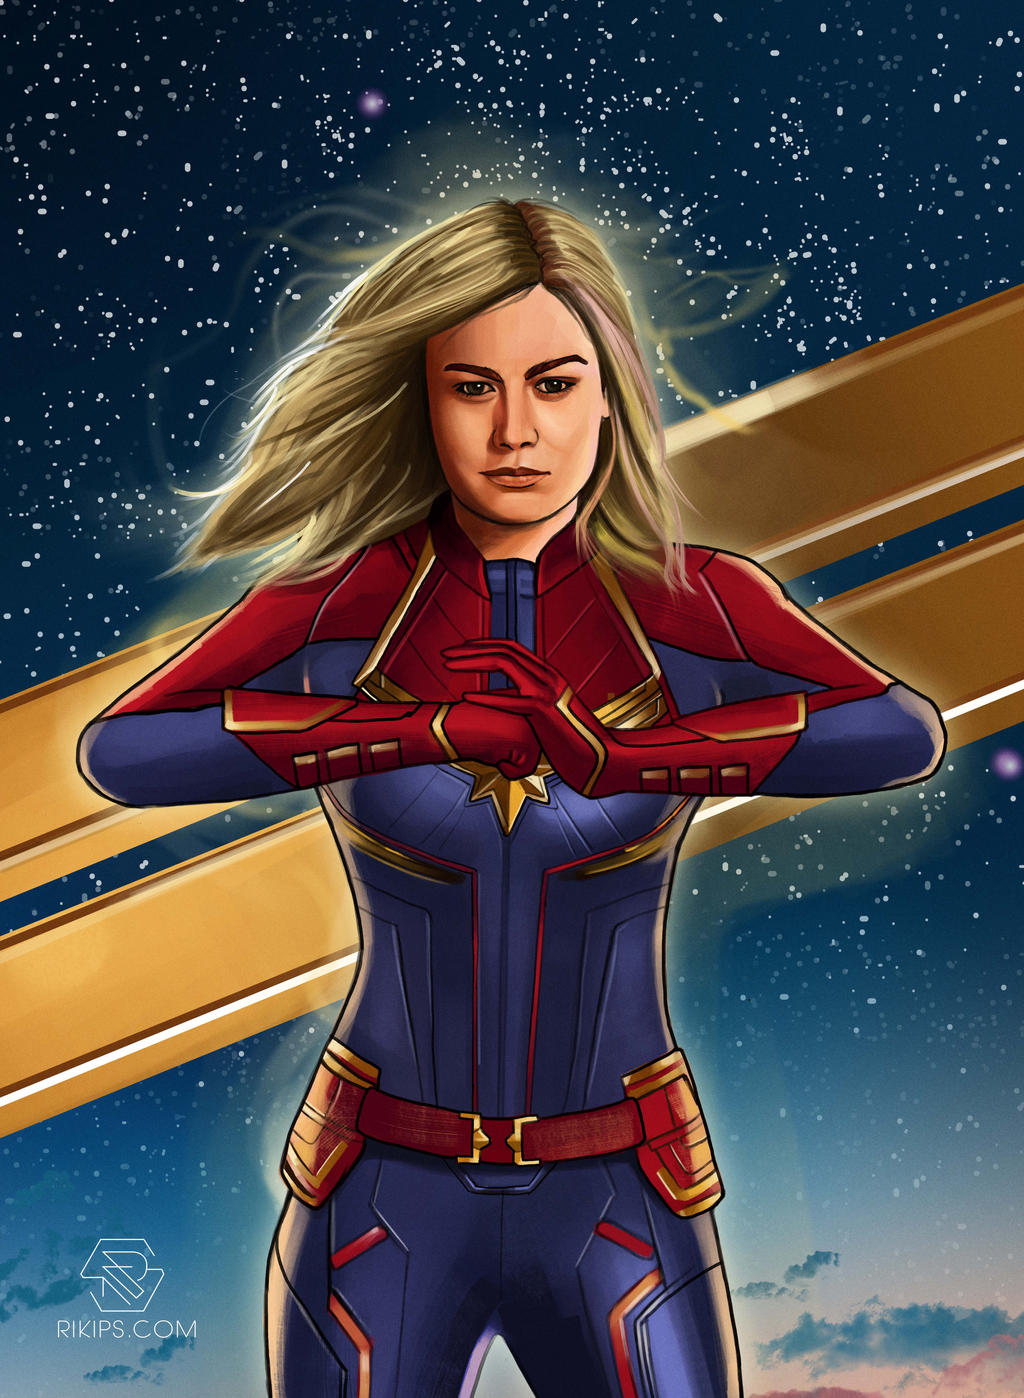 Captain Marvel by rikips on DeviantArt